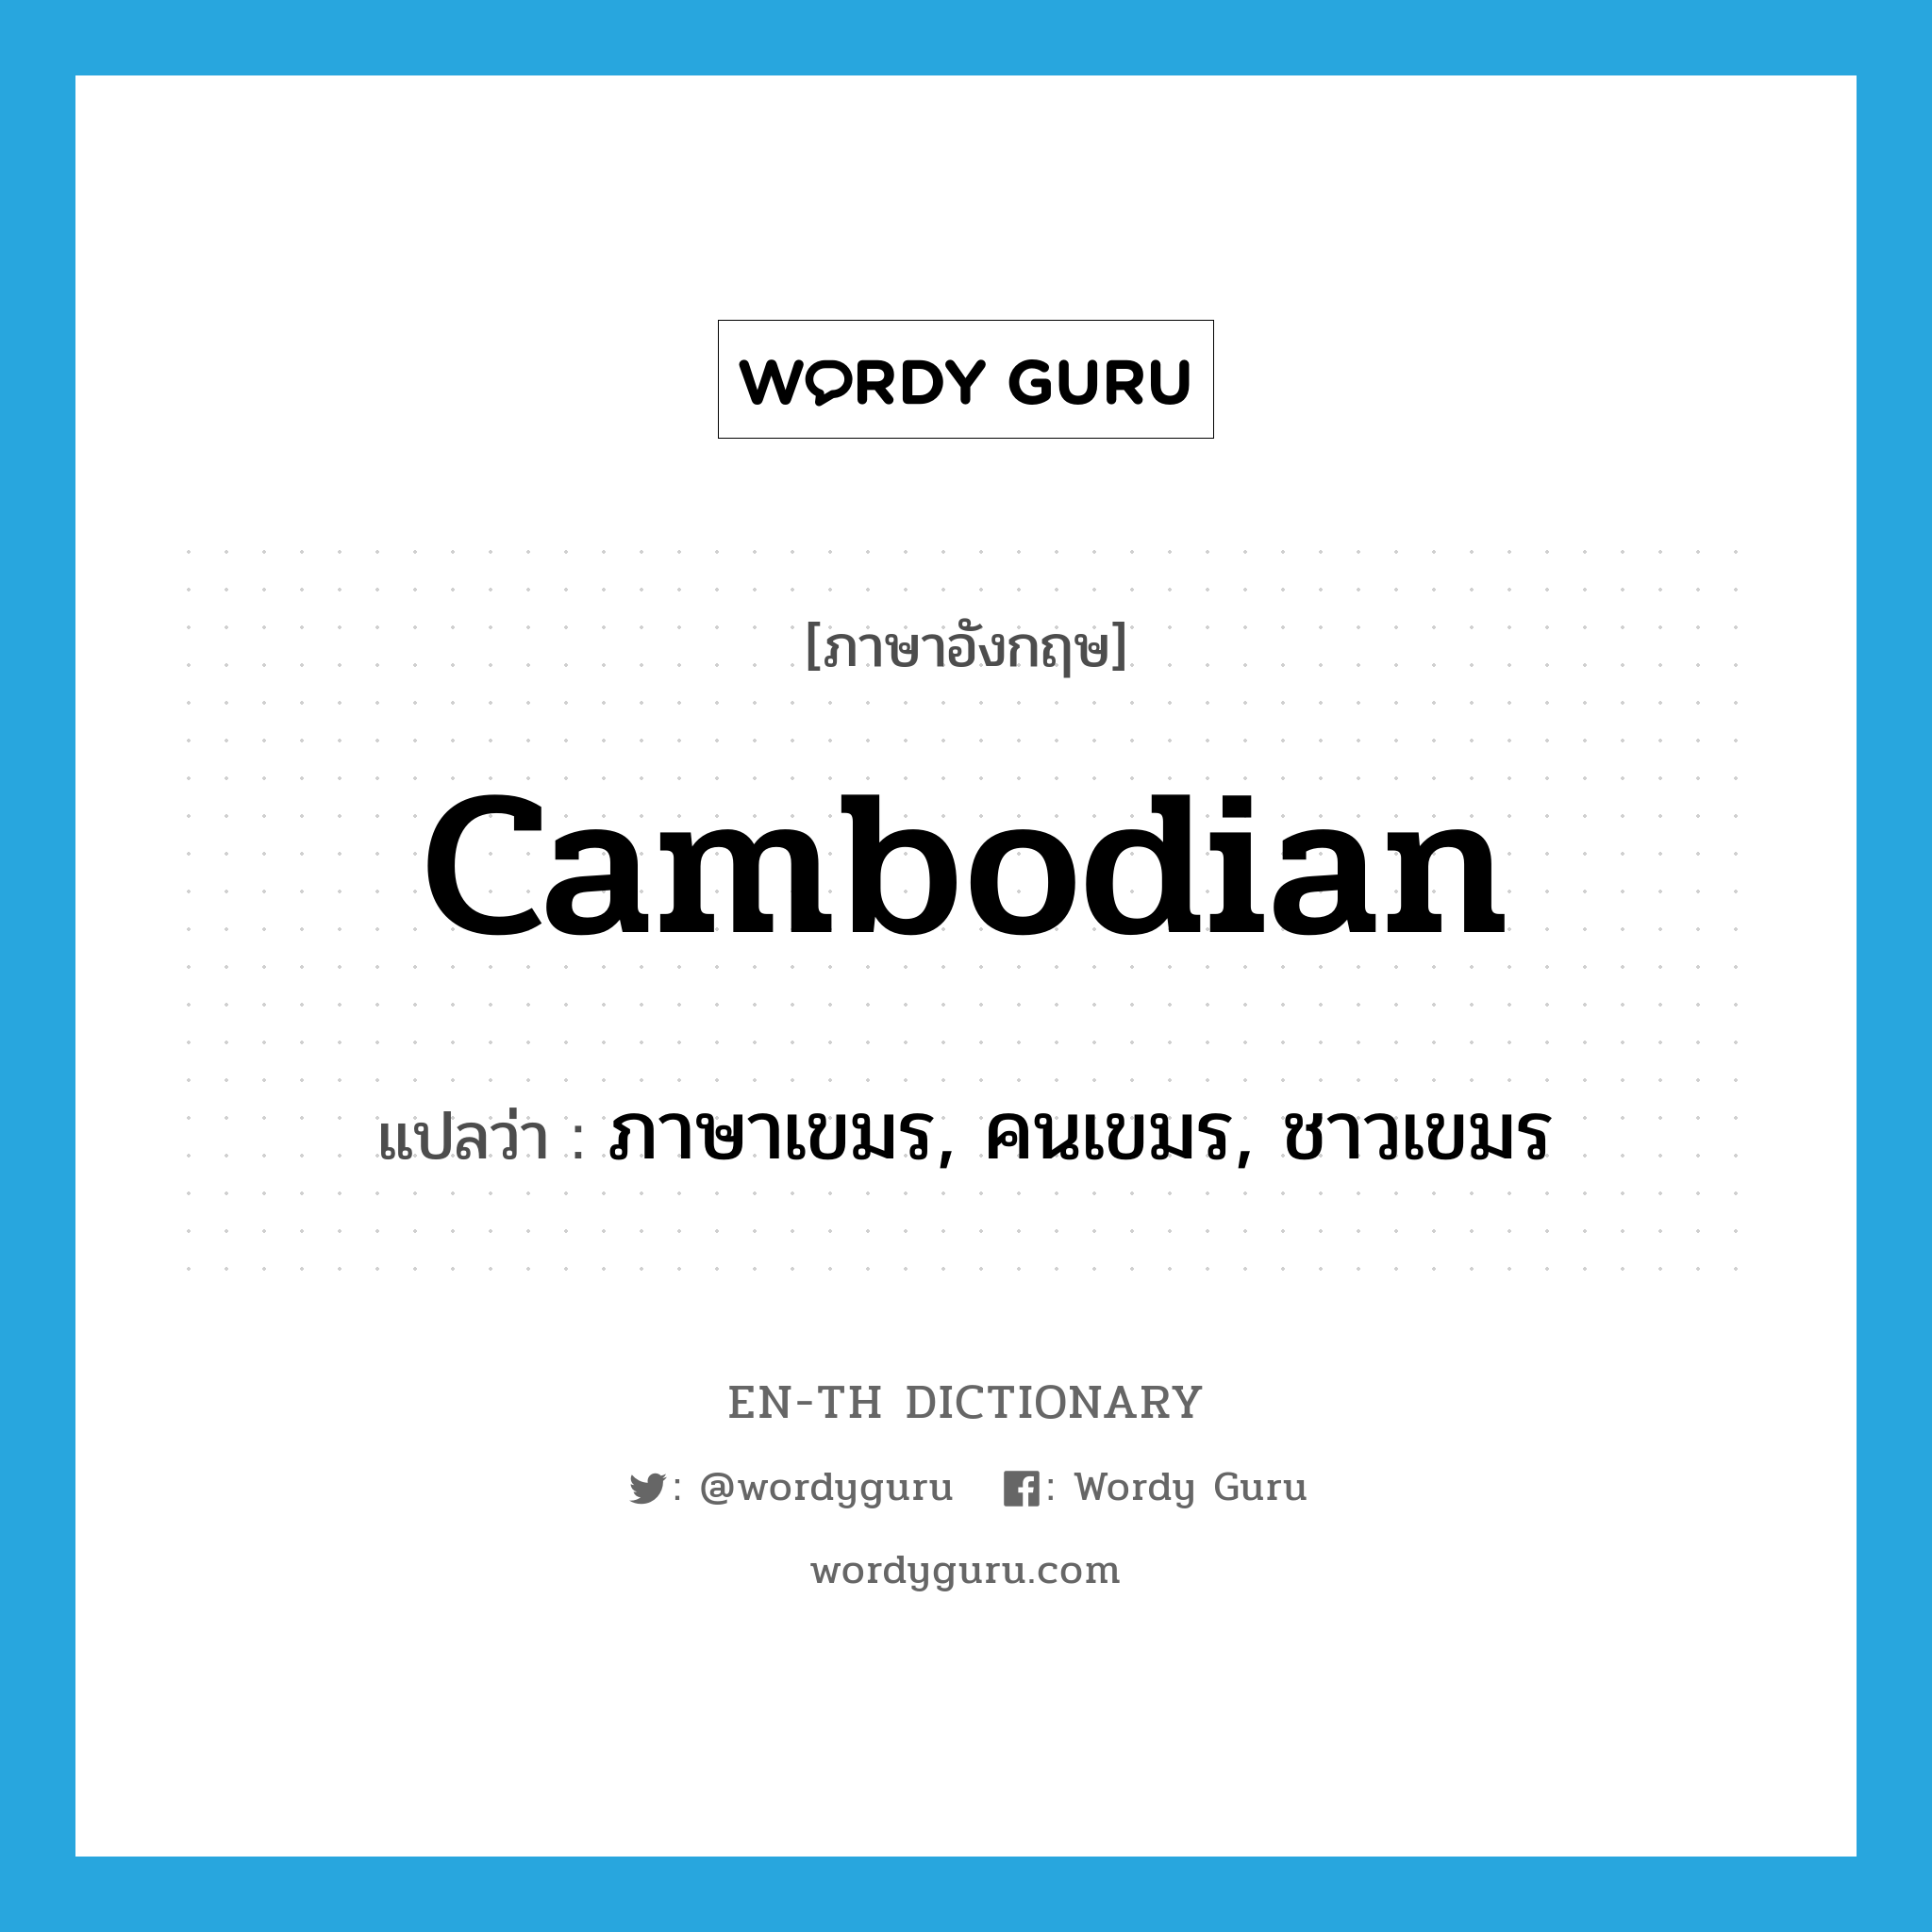 ภาษาเขมร, คนเขมร, ชาวเขมร ภาษาอังกฤษ?, คำศัพท์ภาษาอังกฤษ ภาษาเขมร, คนเขมร, ชาวเขมร แปลว่า Cambodian ประเภท N หมวด N